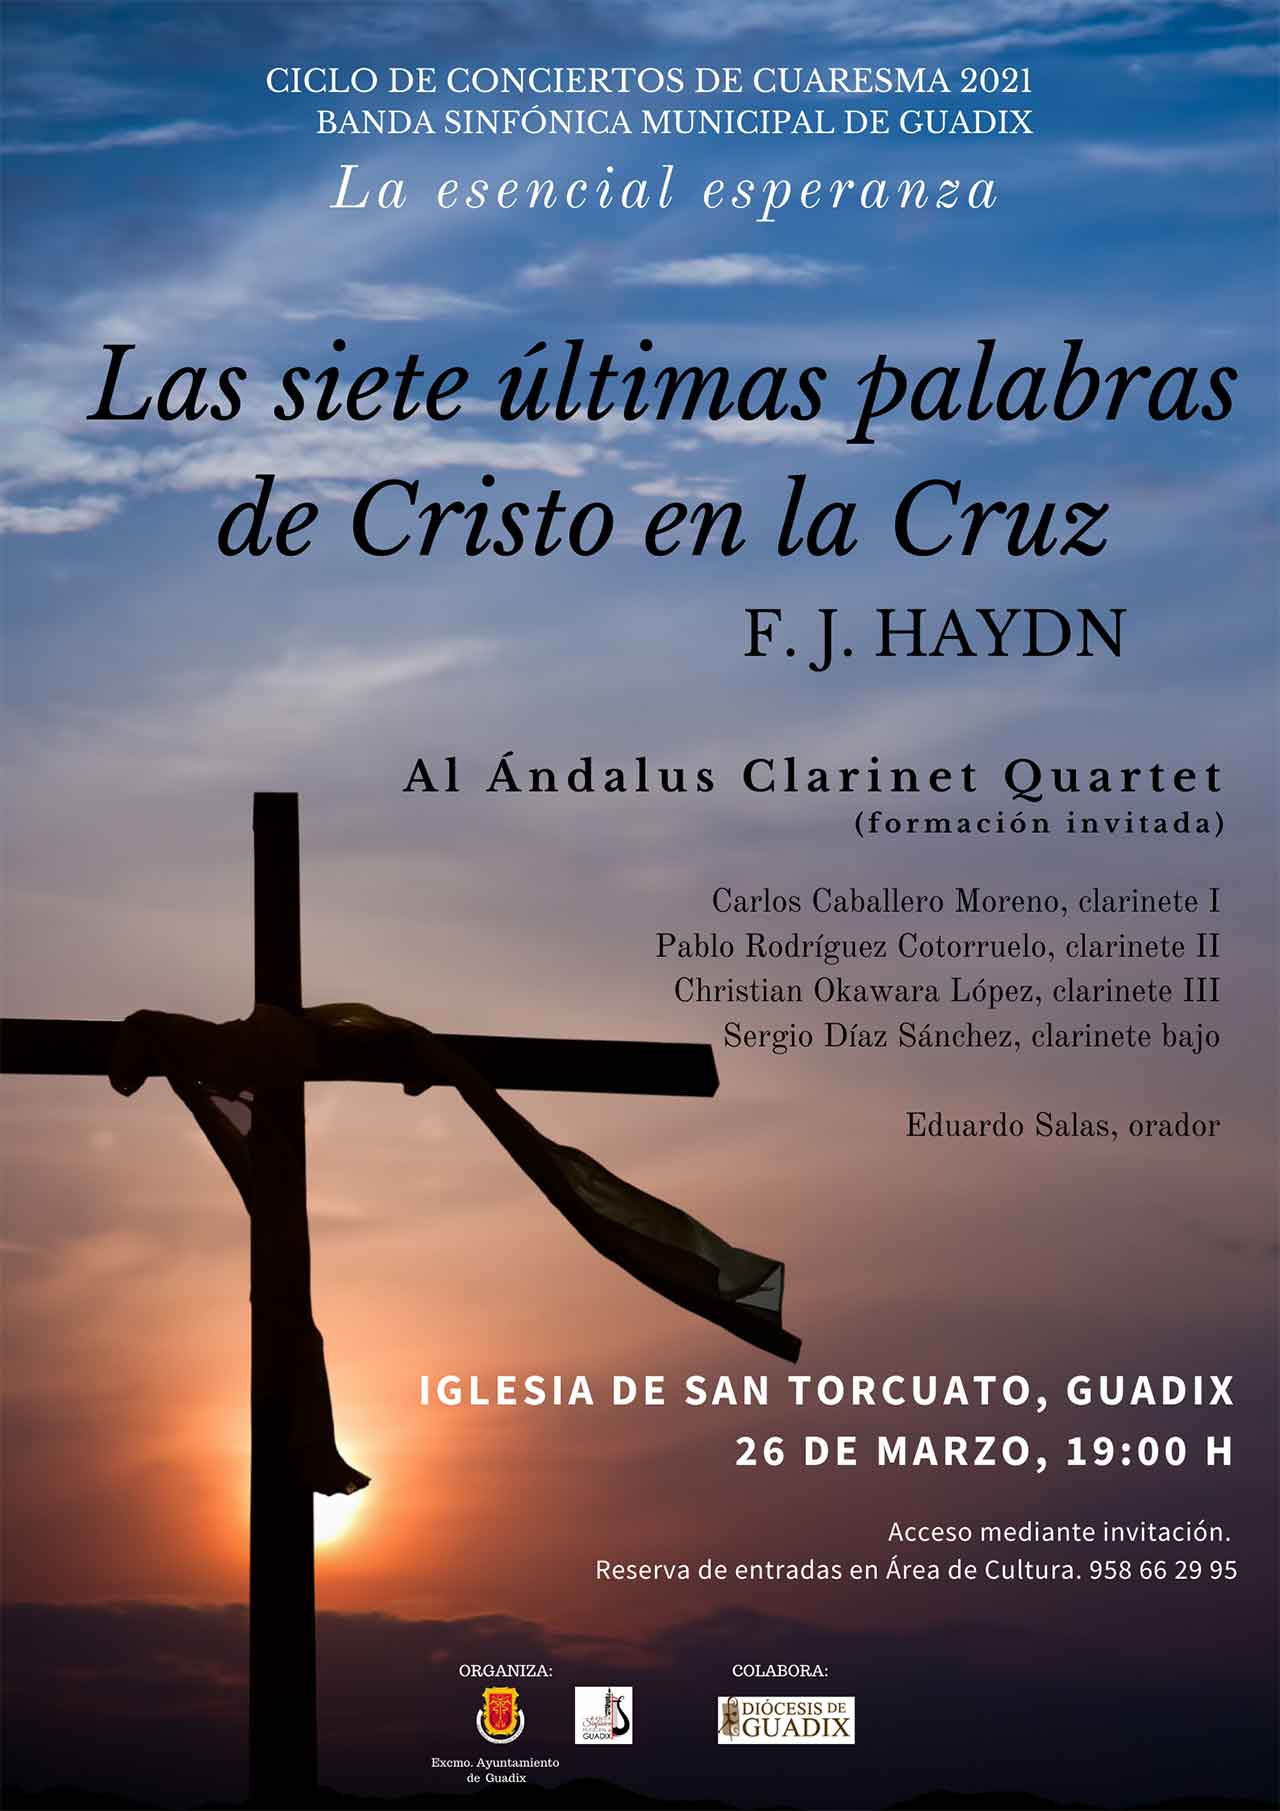 Concierto "Las siete últimas palabras de Cristo en la Cruz" en Guadix